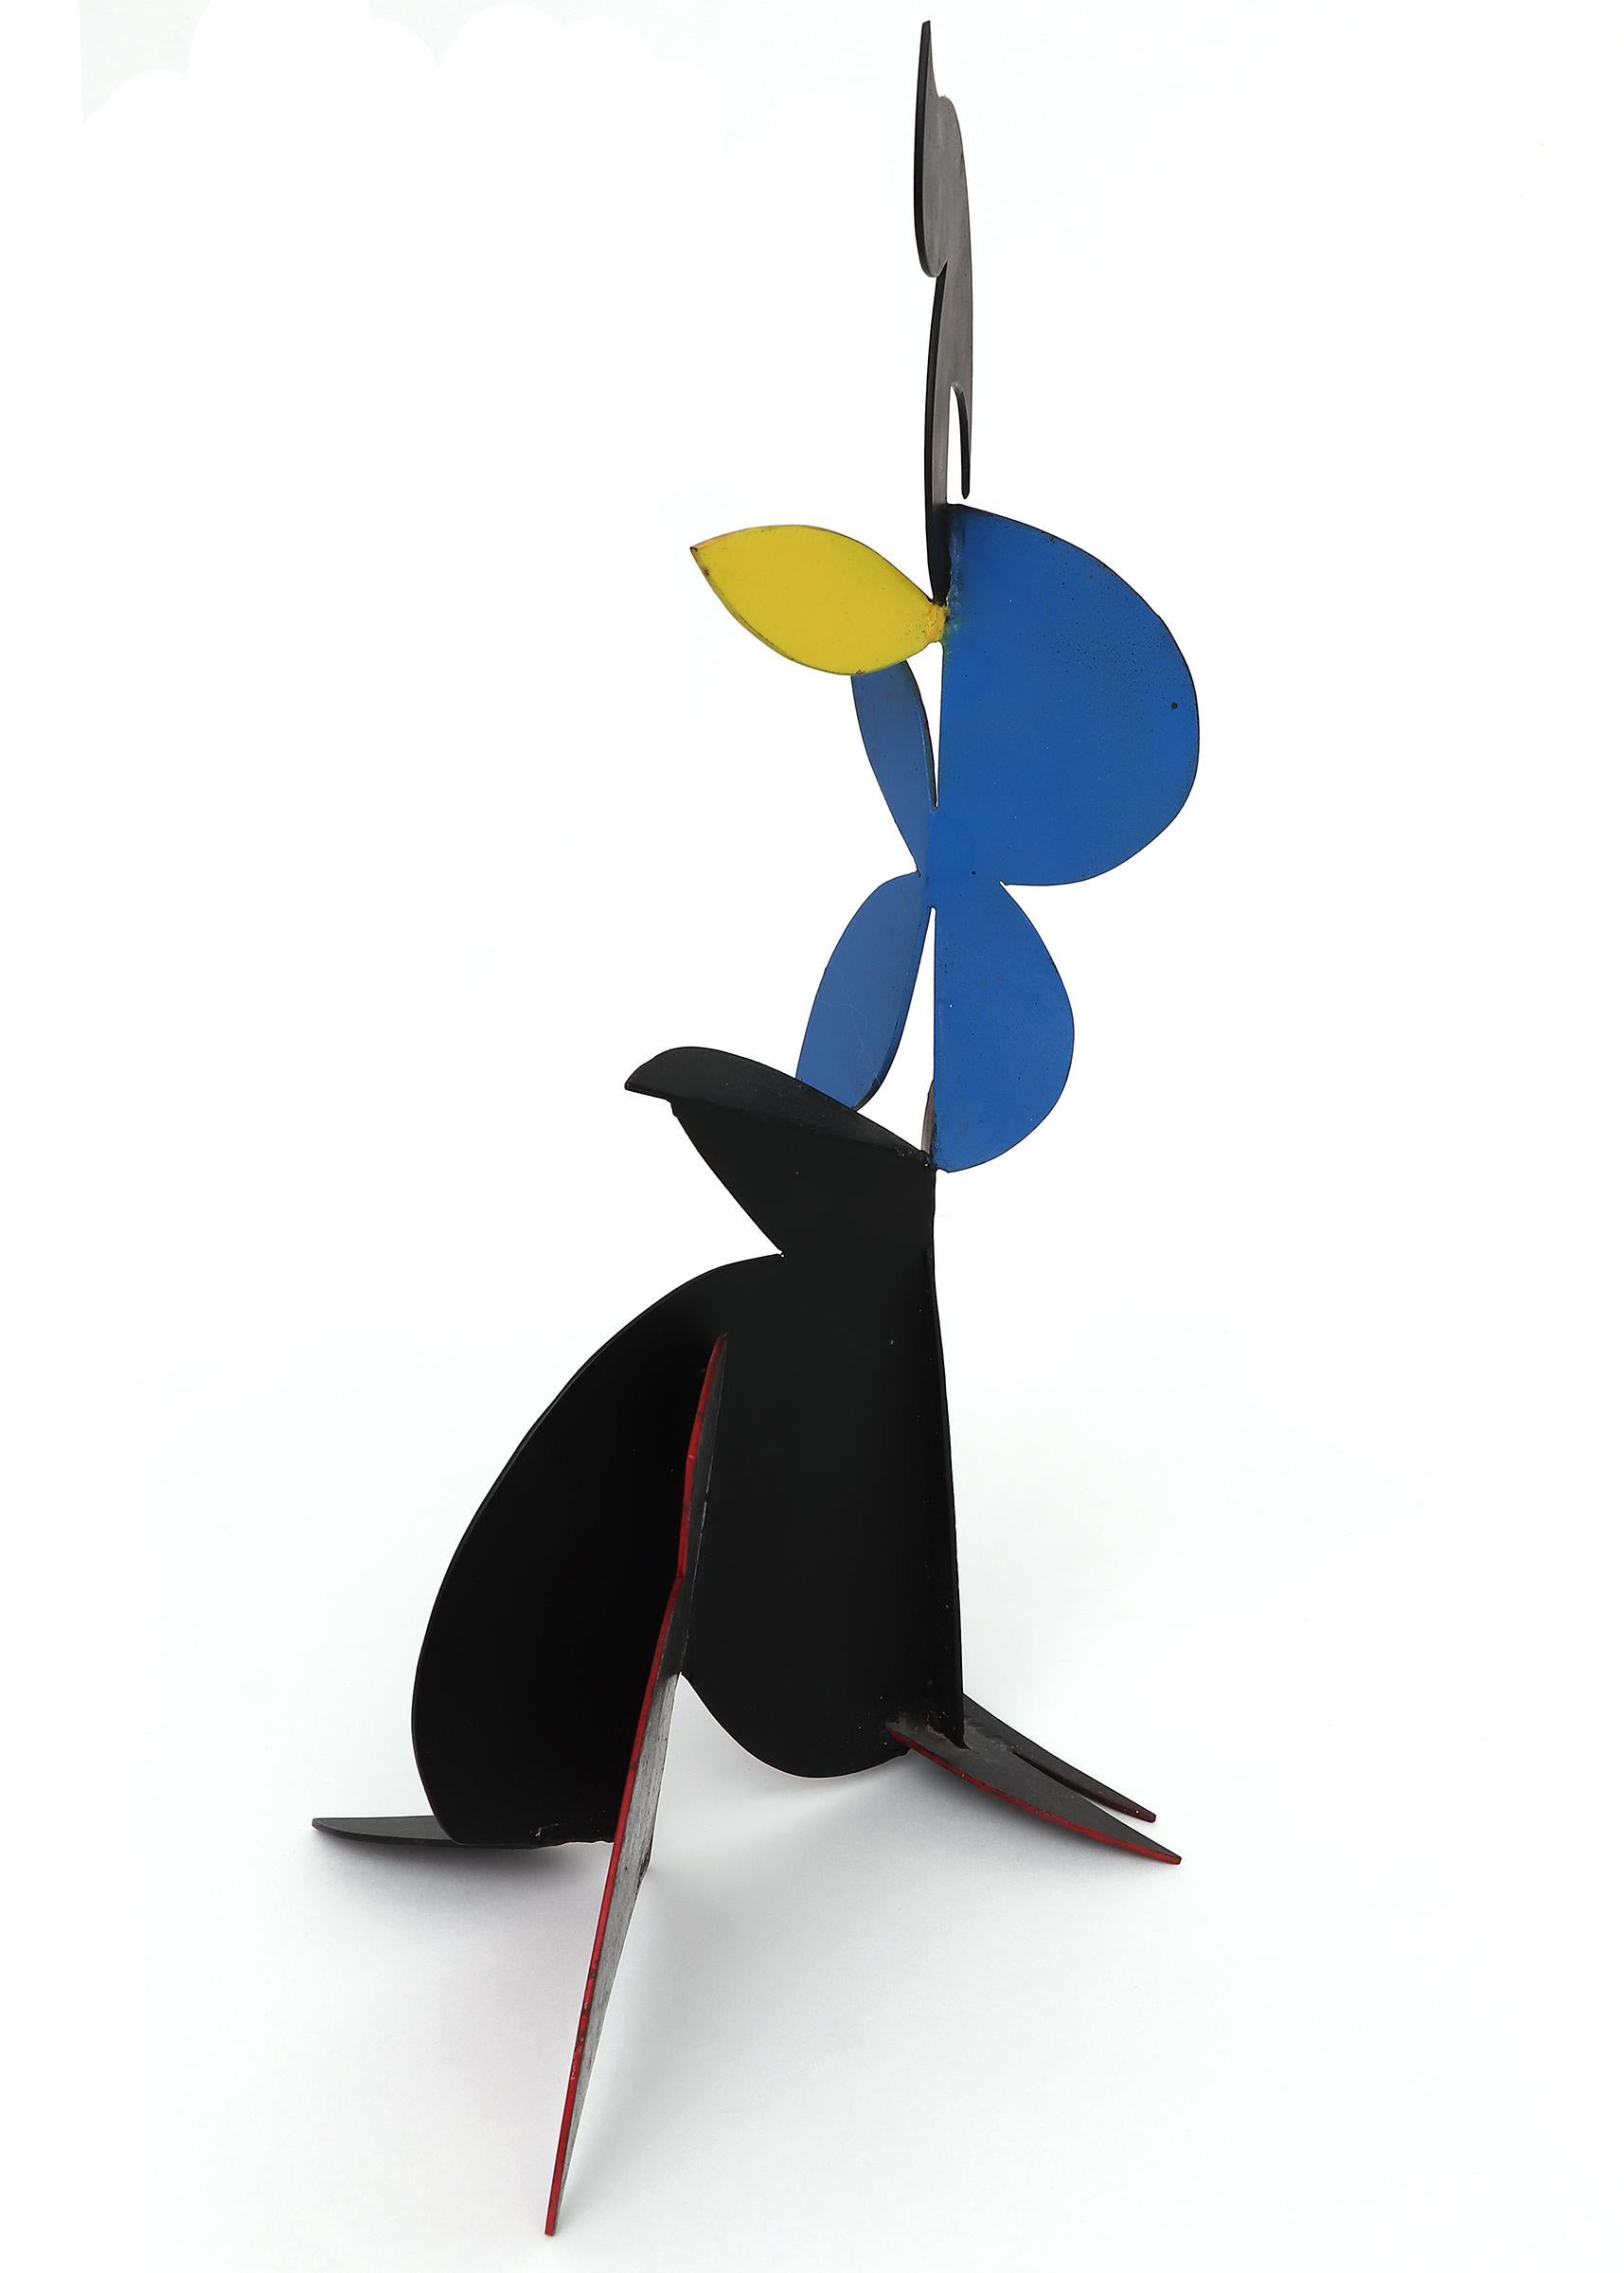 Sculpture abstraite en métal peint d'Edward (Eduardo) Arcenio Chavez (1917-1995). Peint dans les trois couleurs primaires : rouge, bleu et jaune. La sculpture mesure 16 ½ x 7 x 11 pouces. 

À propos de l'artiste :

Né en 1917
Décédé en 1995

Né à